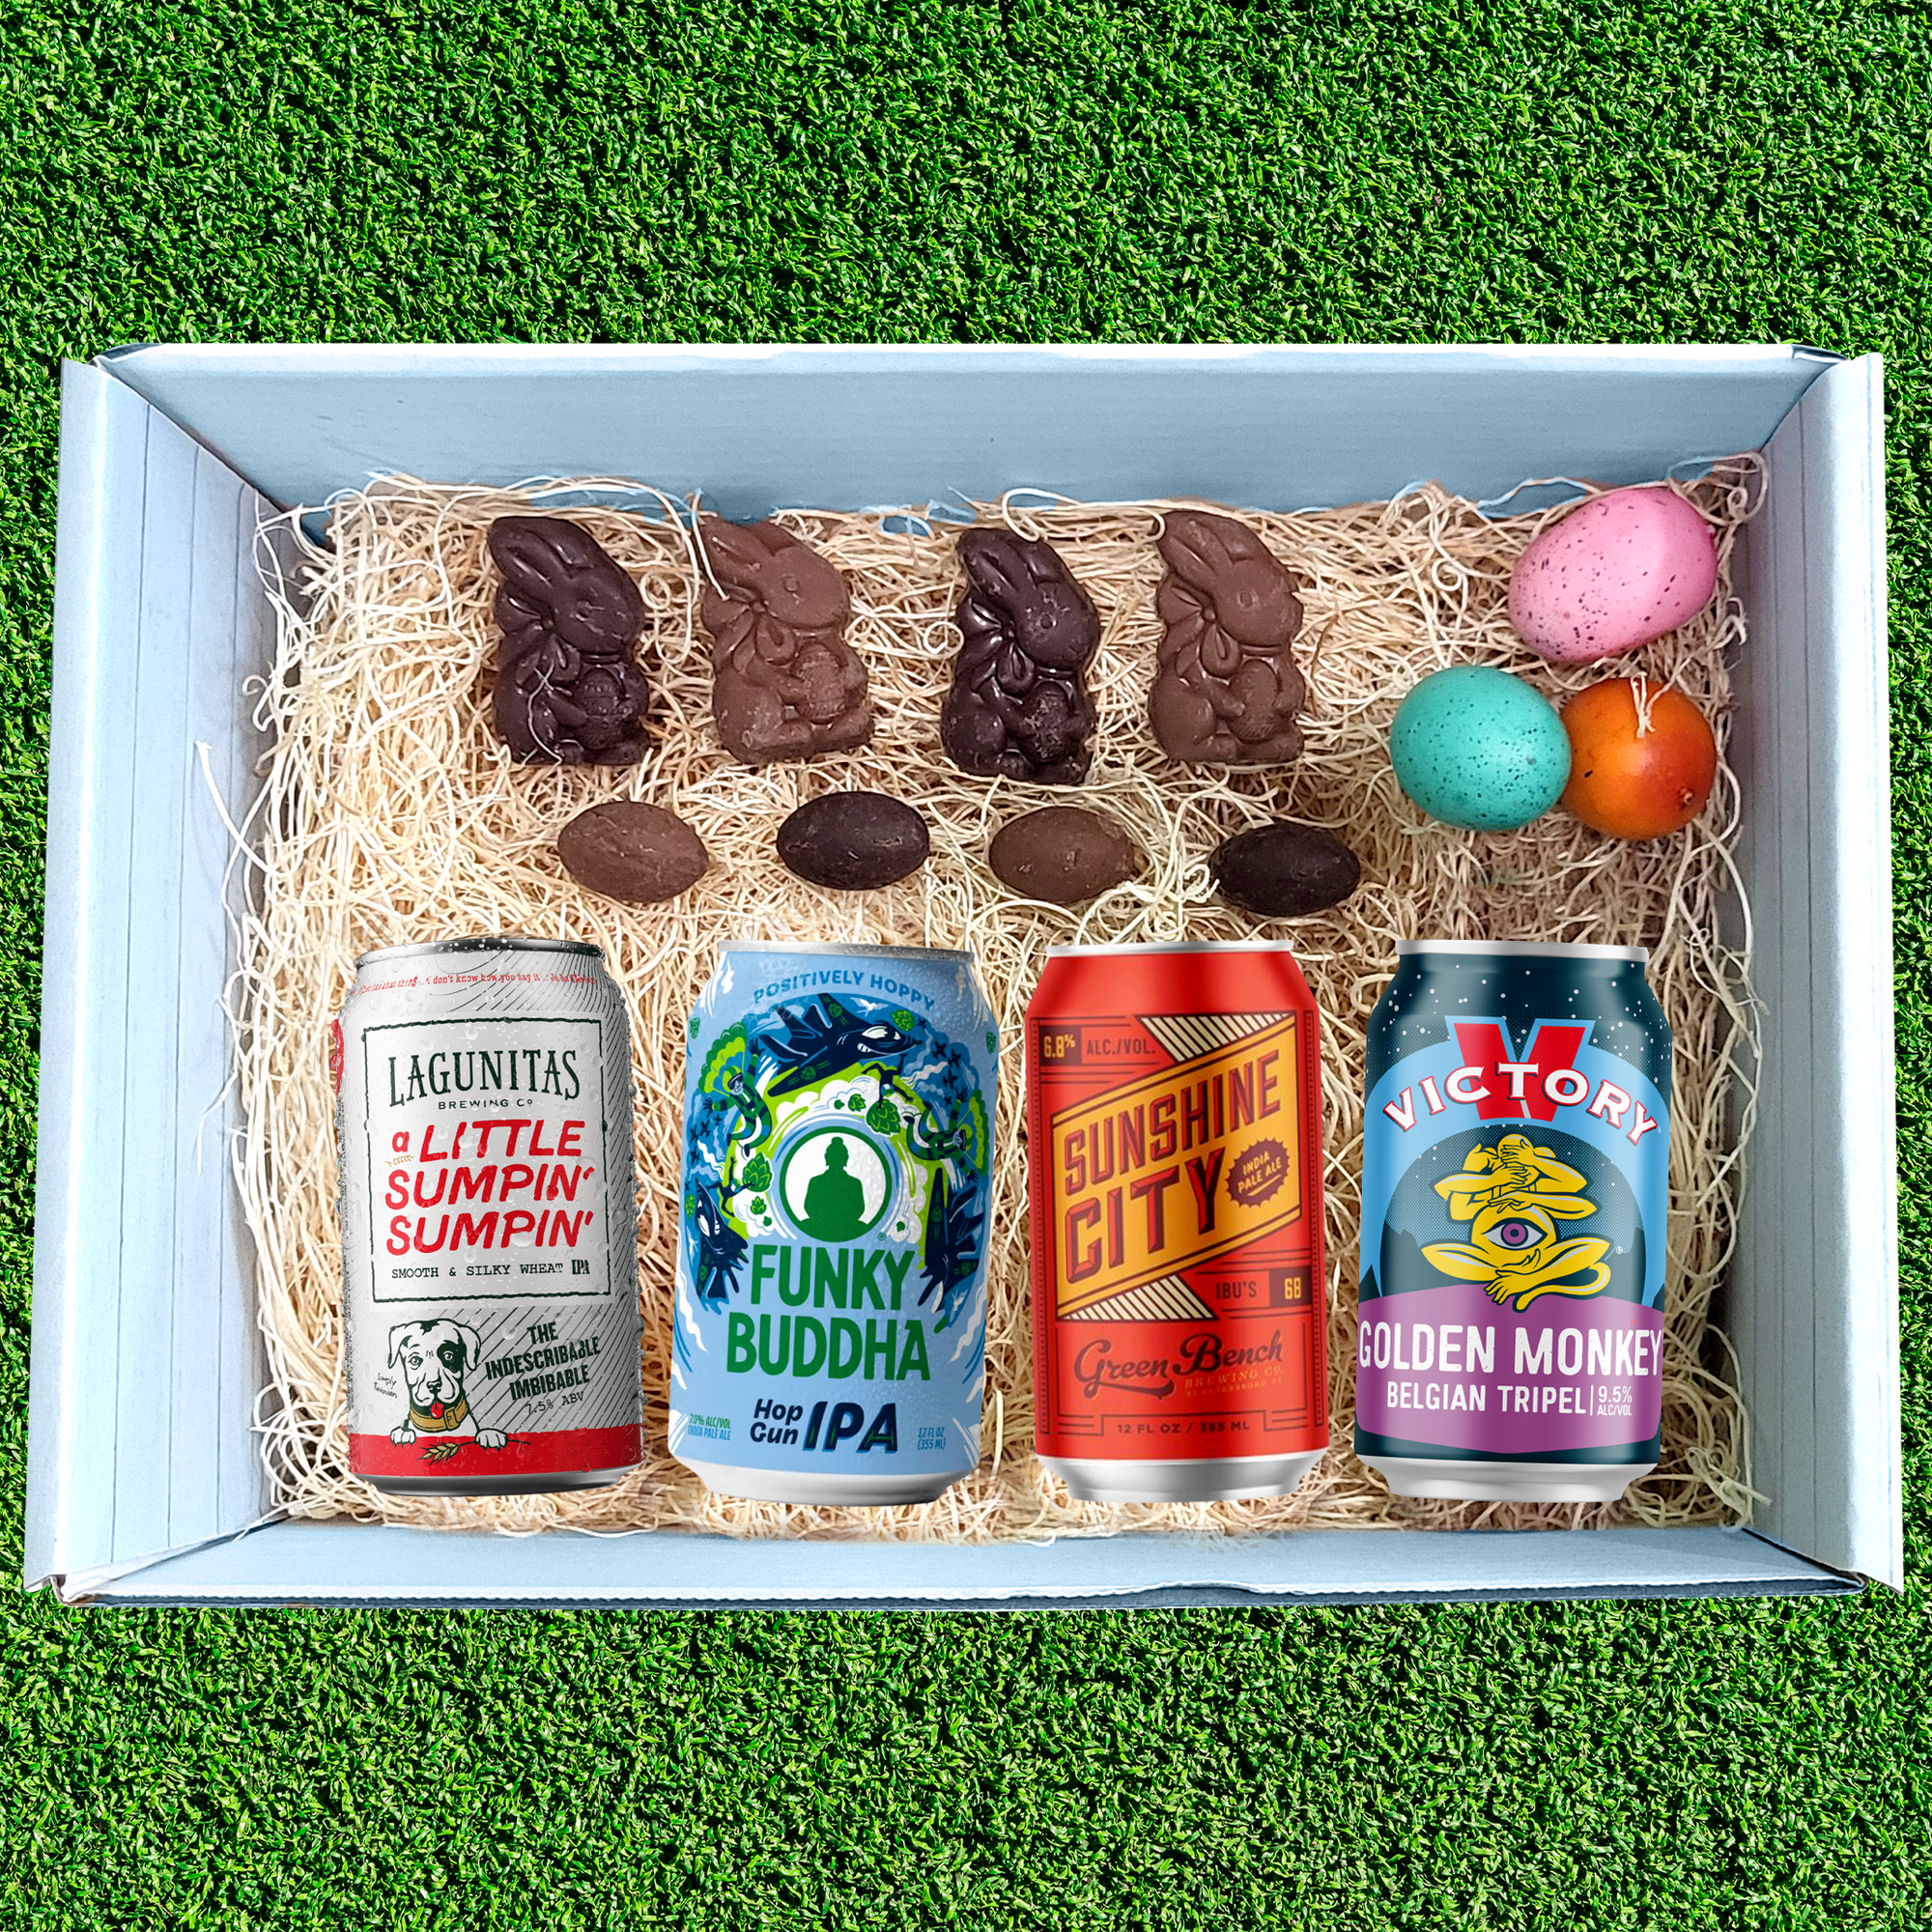 Hoppy Easter Beer Gift Basket